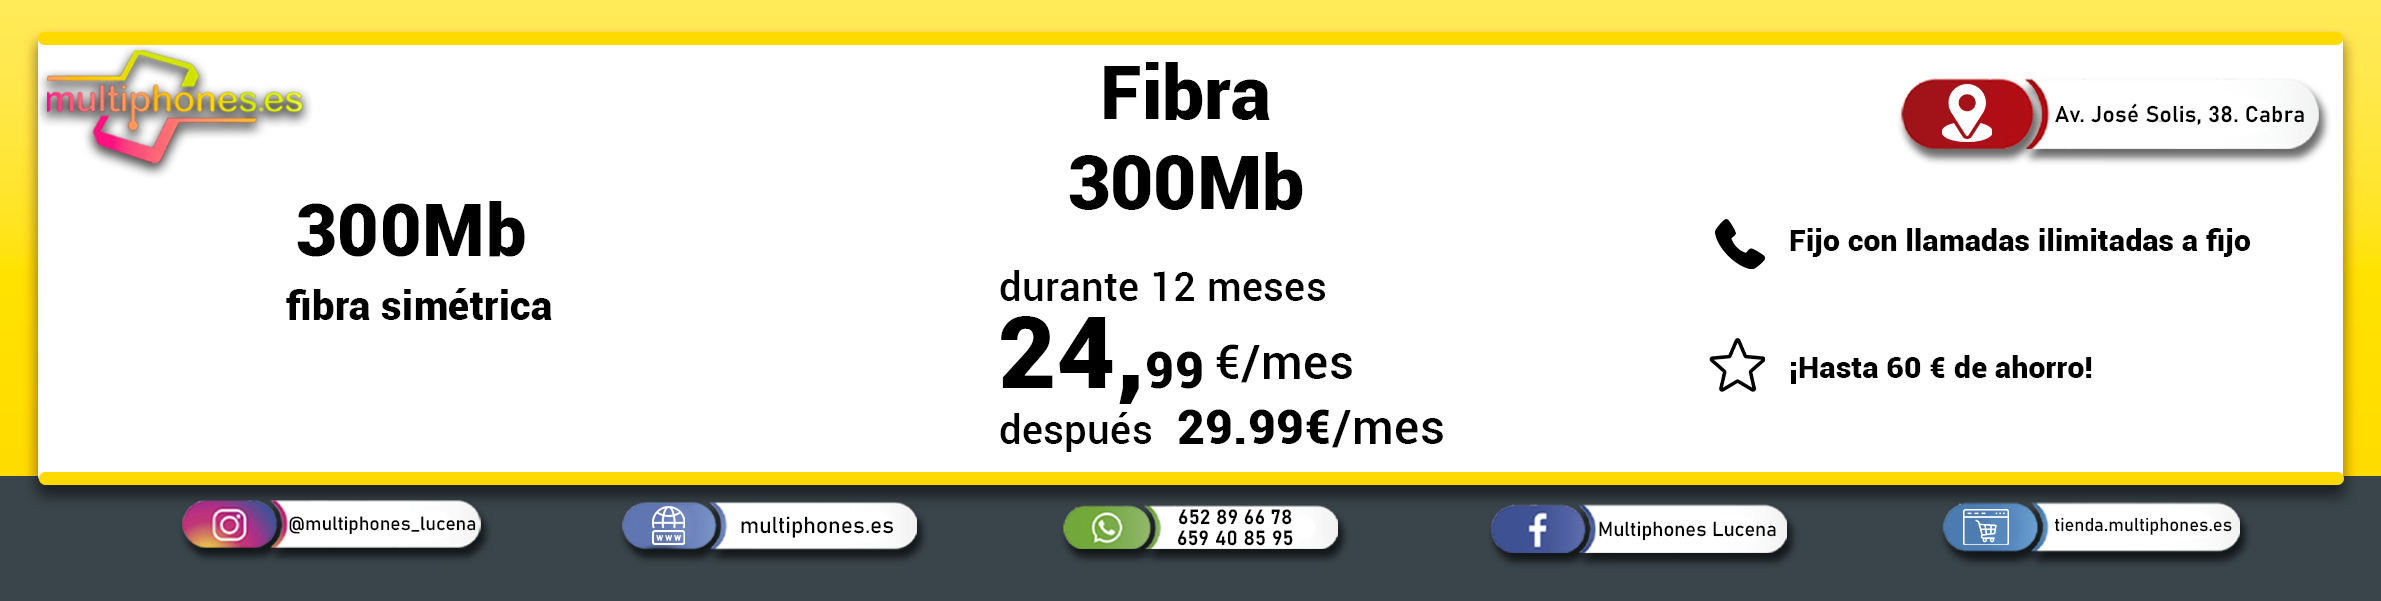 MASMOVIL – FIBRA 300Mb Y FIJO  con llamadas ilimitadas de fijo a fijo.